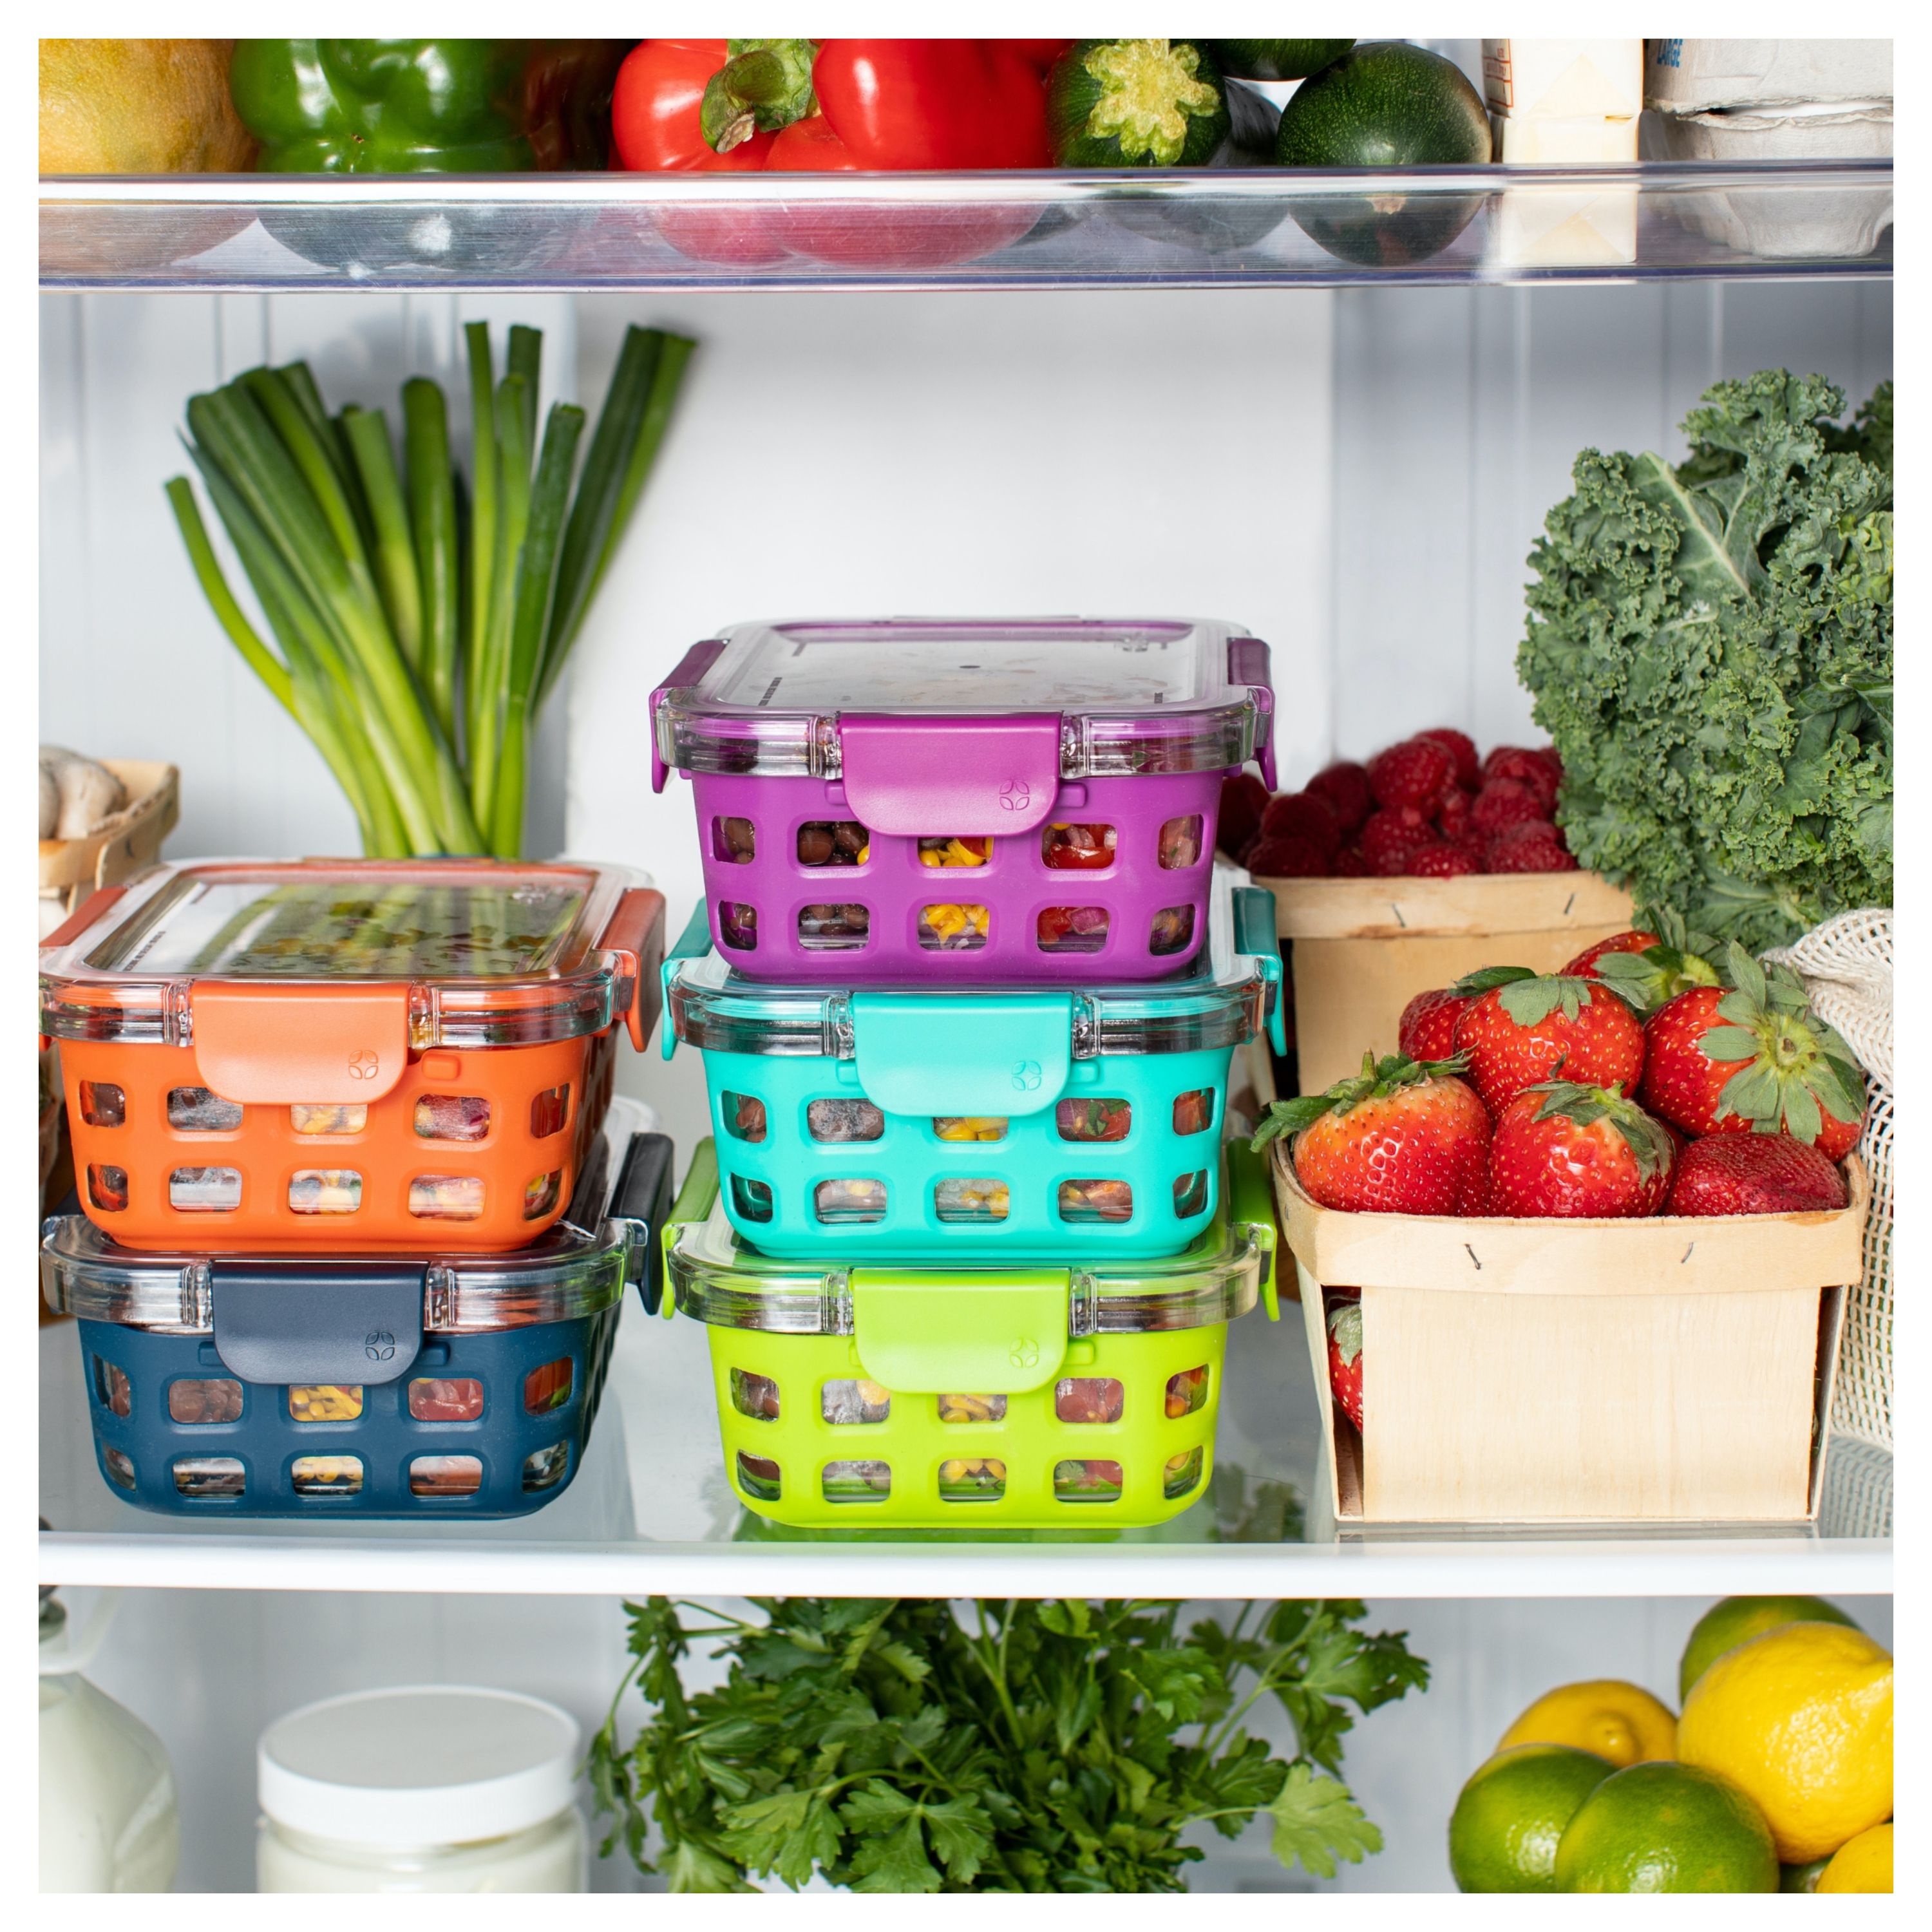 Des fruits et des légumes dans un réfrigérateur